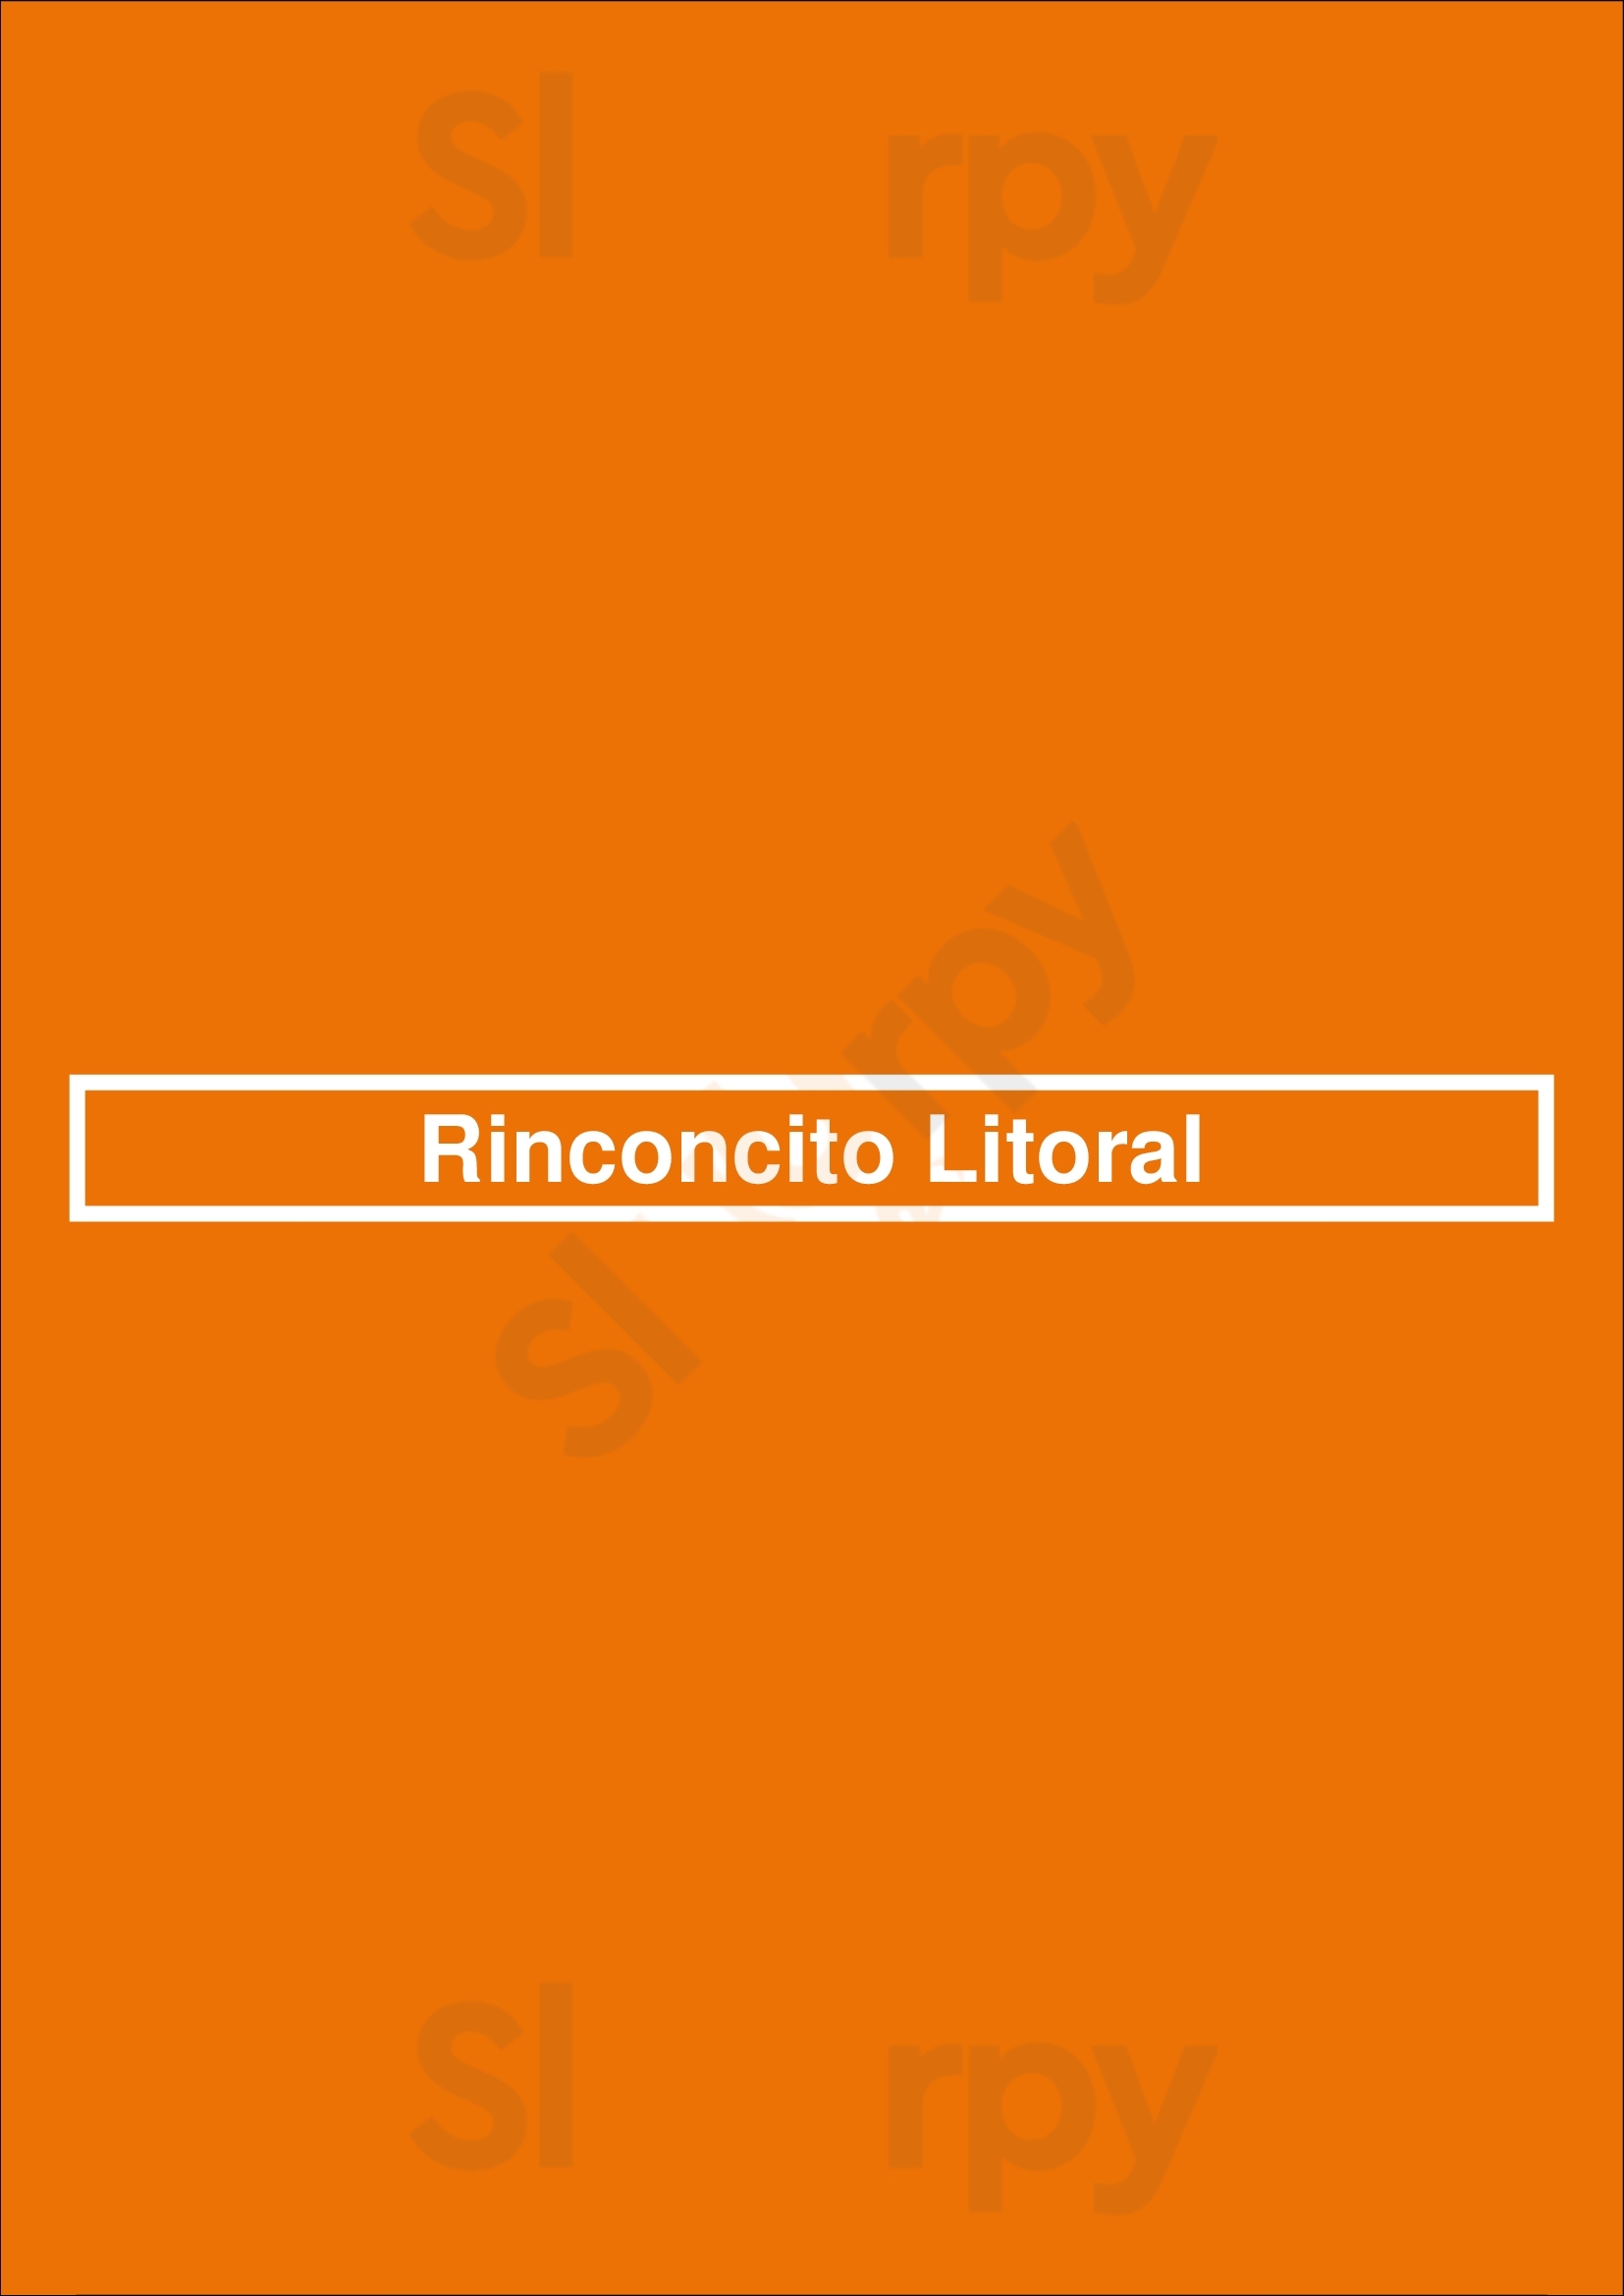 Rinconcito Litoral Málaga Menu - 1